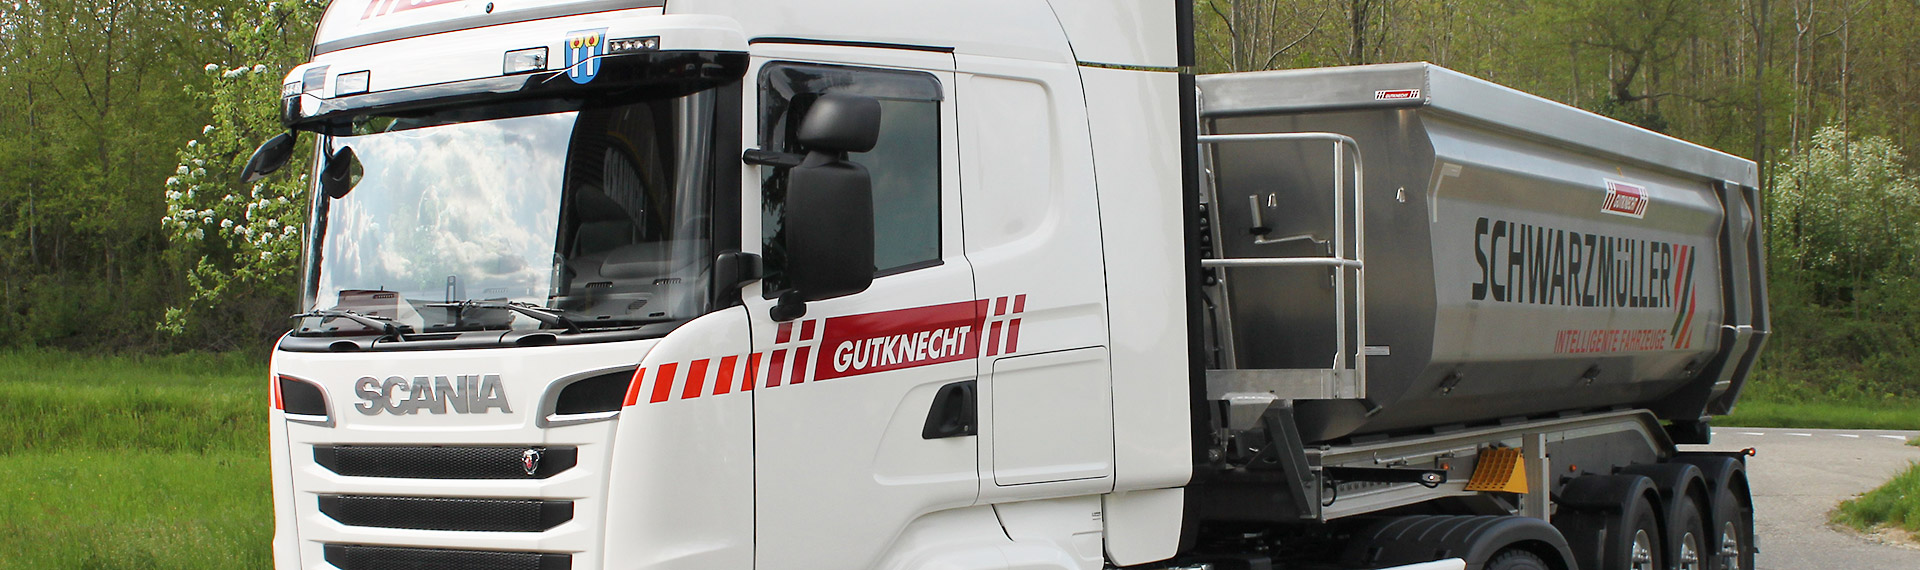 Gutknecht Transporte Frontansicht Lastenwagen Ausschnitt